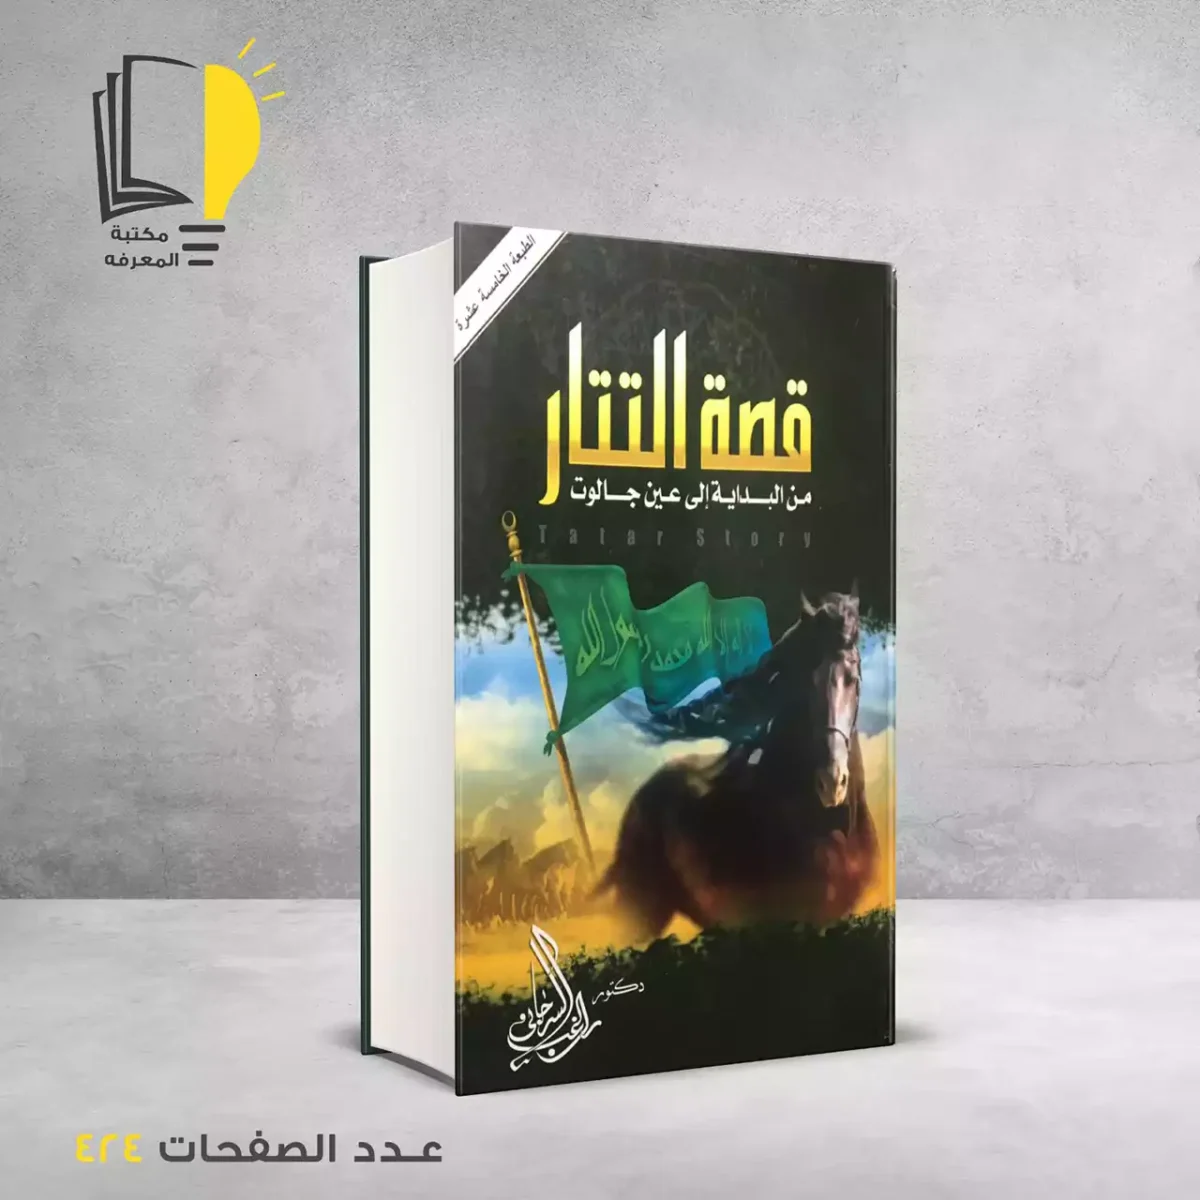 مكتبة المعرفة - كتاب قصة التتار